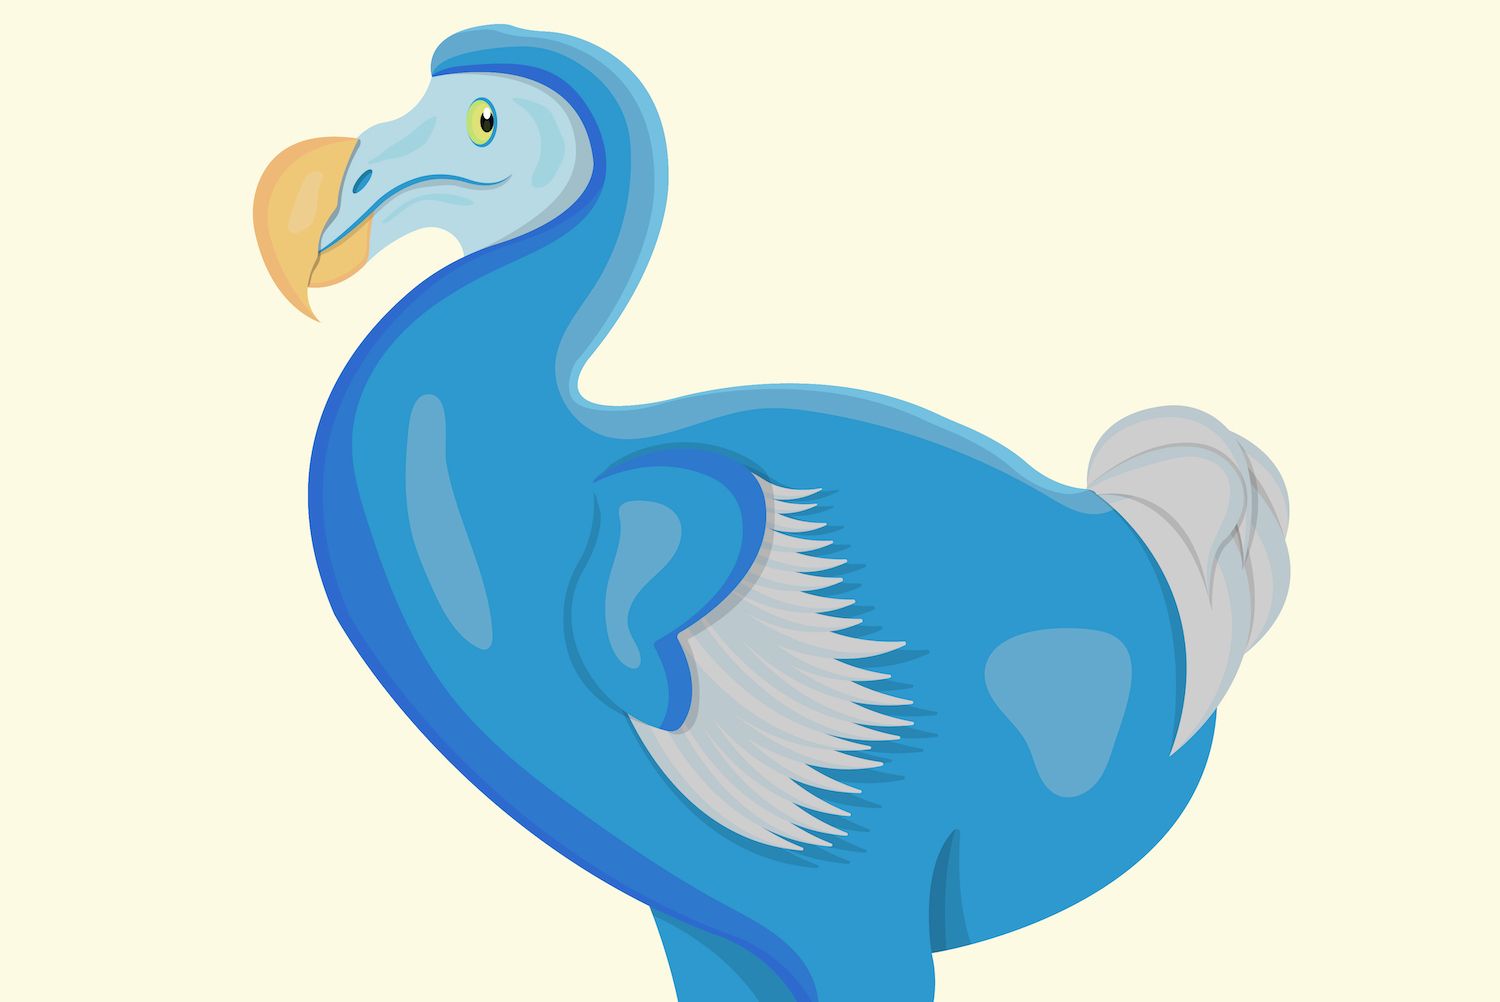 the dodo bird